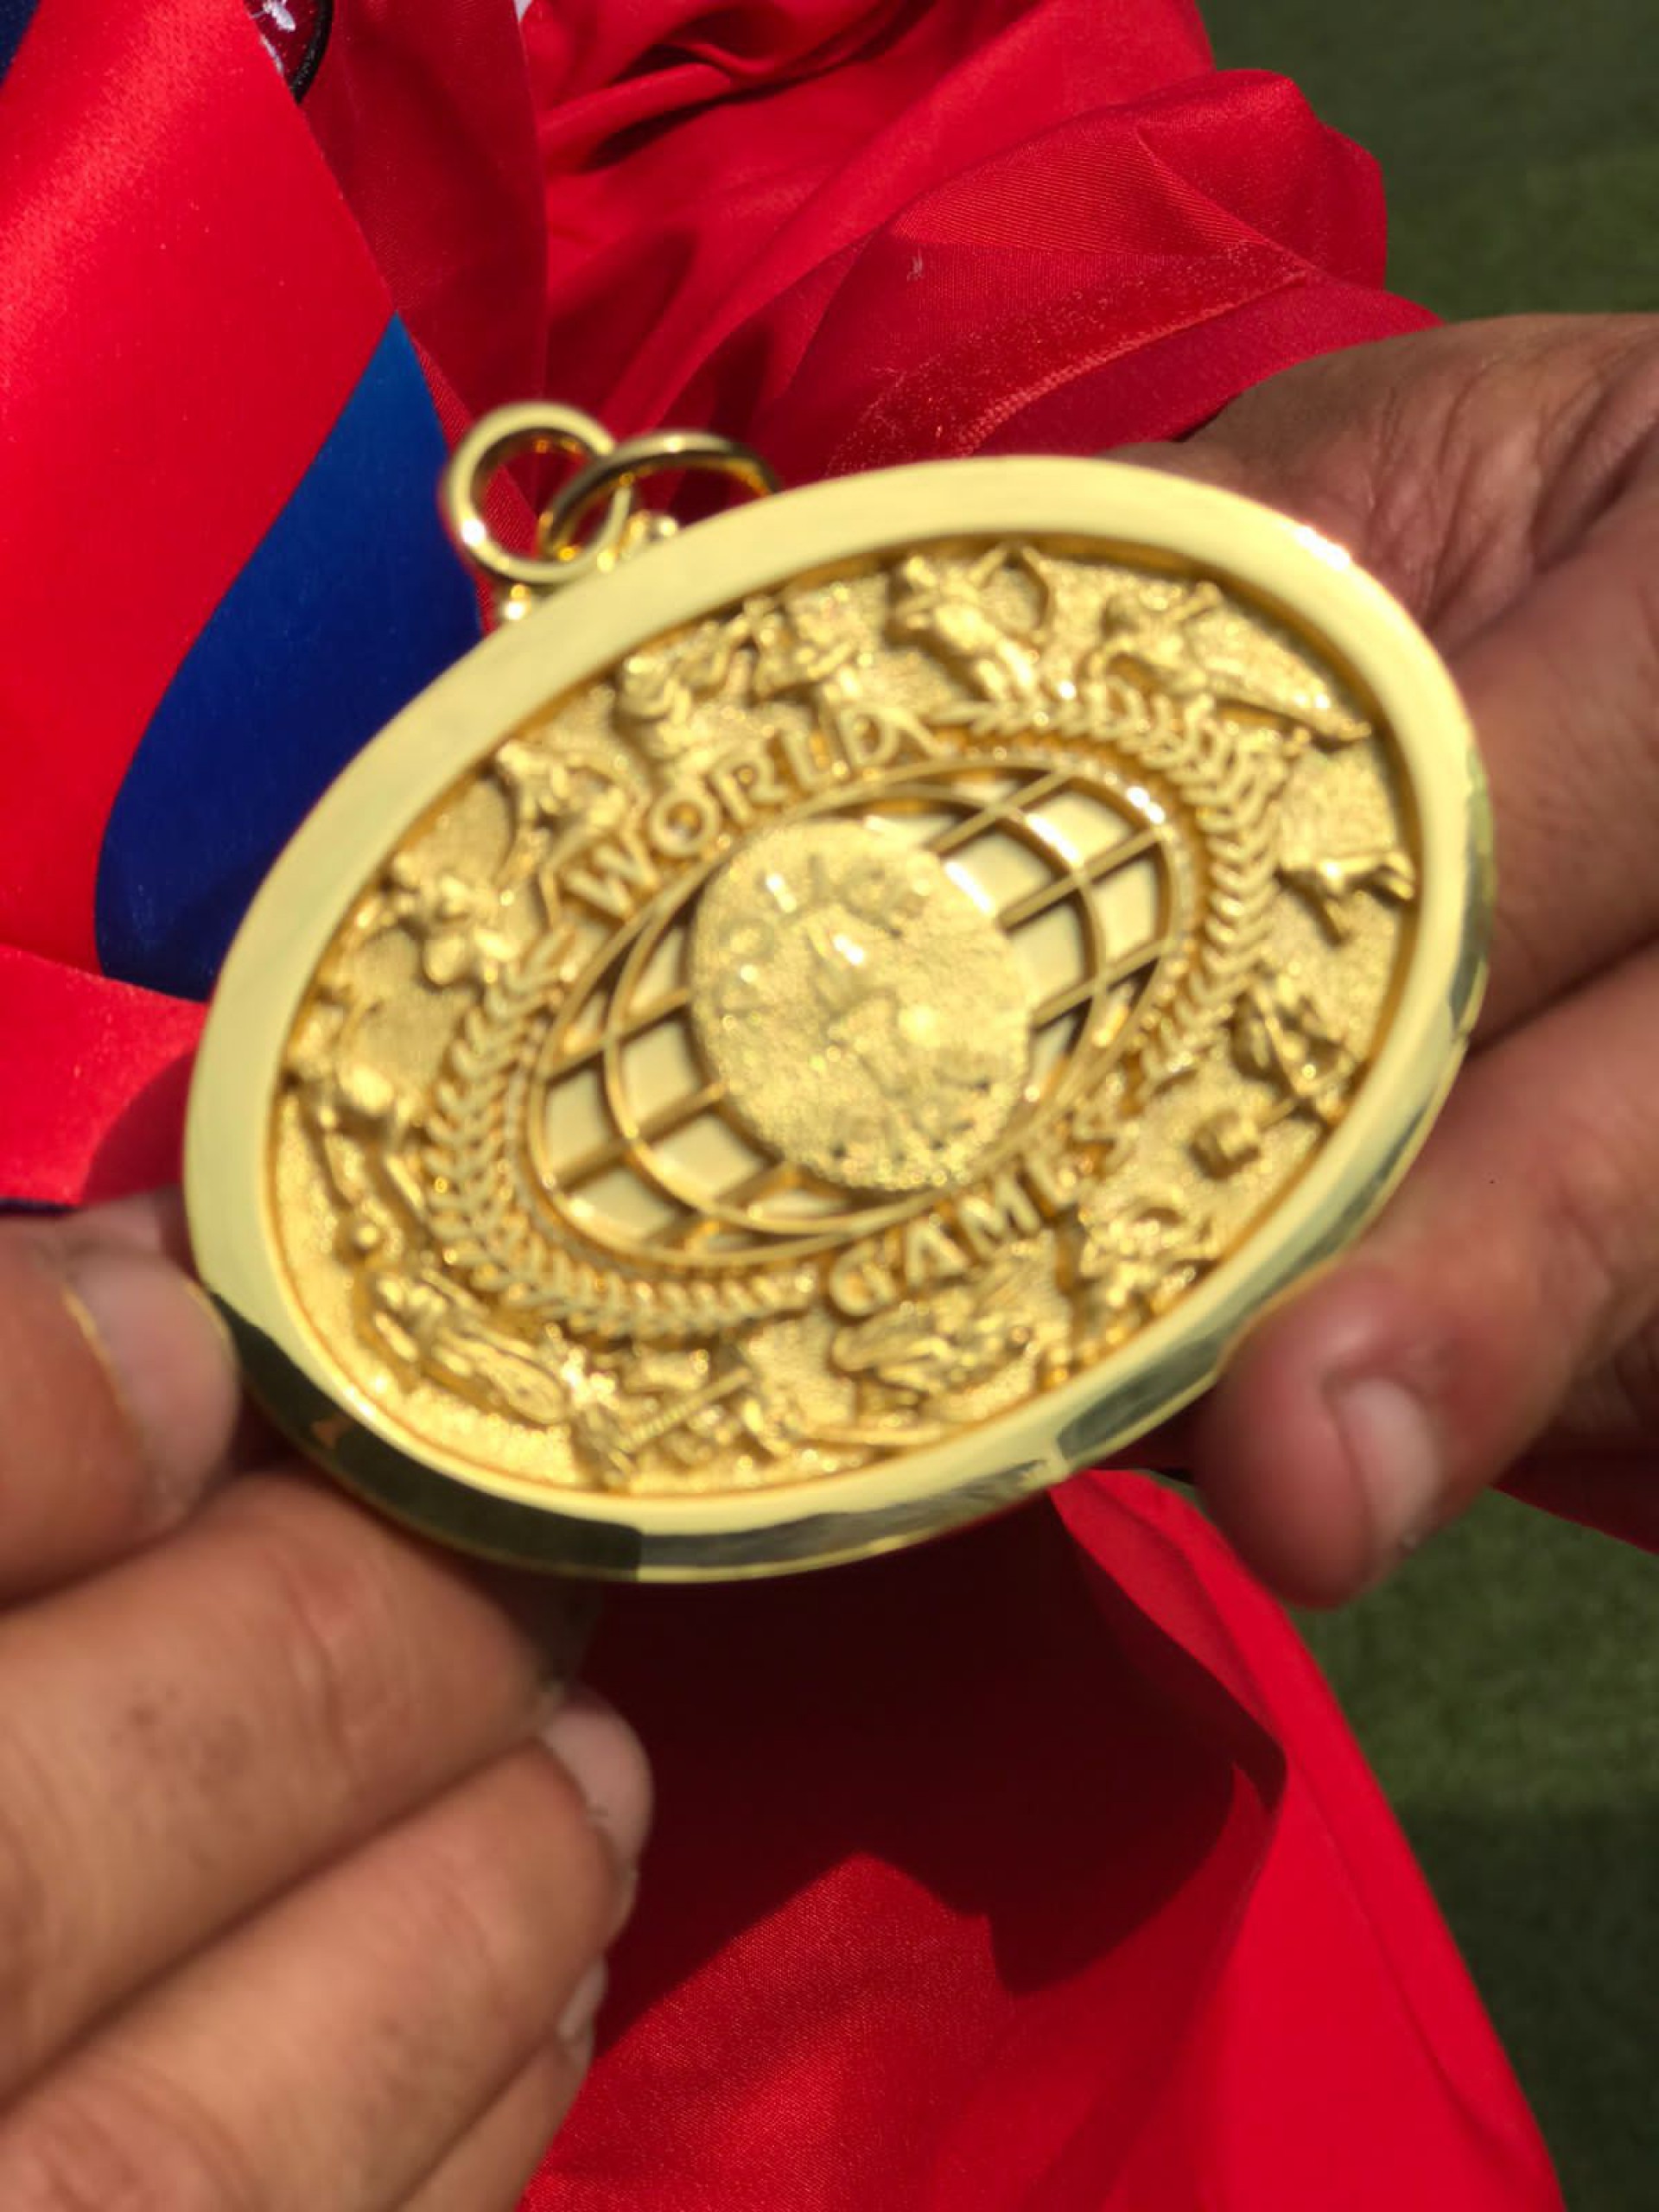 CBMERJ conquista medalhas de ouro e bronze em competição na Holanda - Foto: Divulgação/ CBMERJ